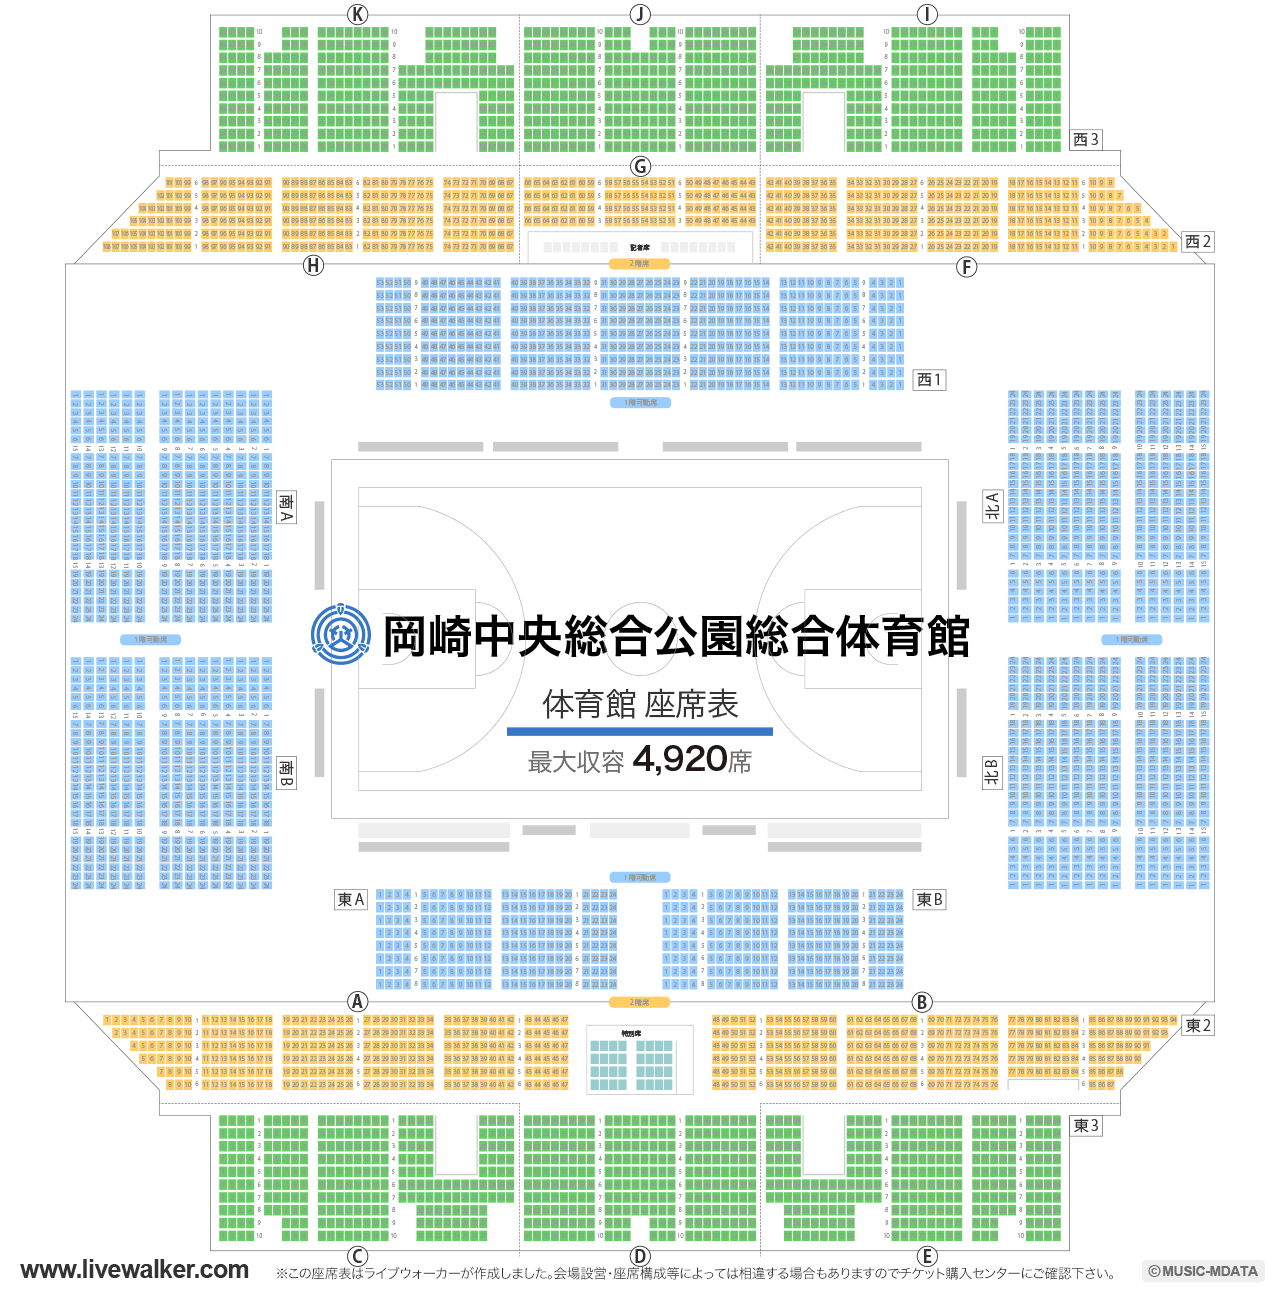 岡崎中央総合公園総合体育館アリーナの座席表